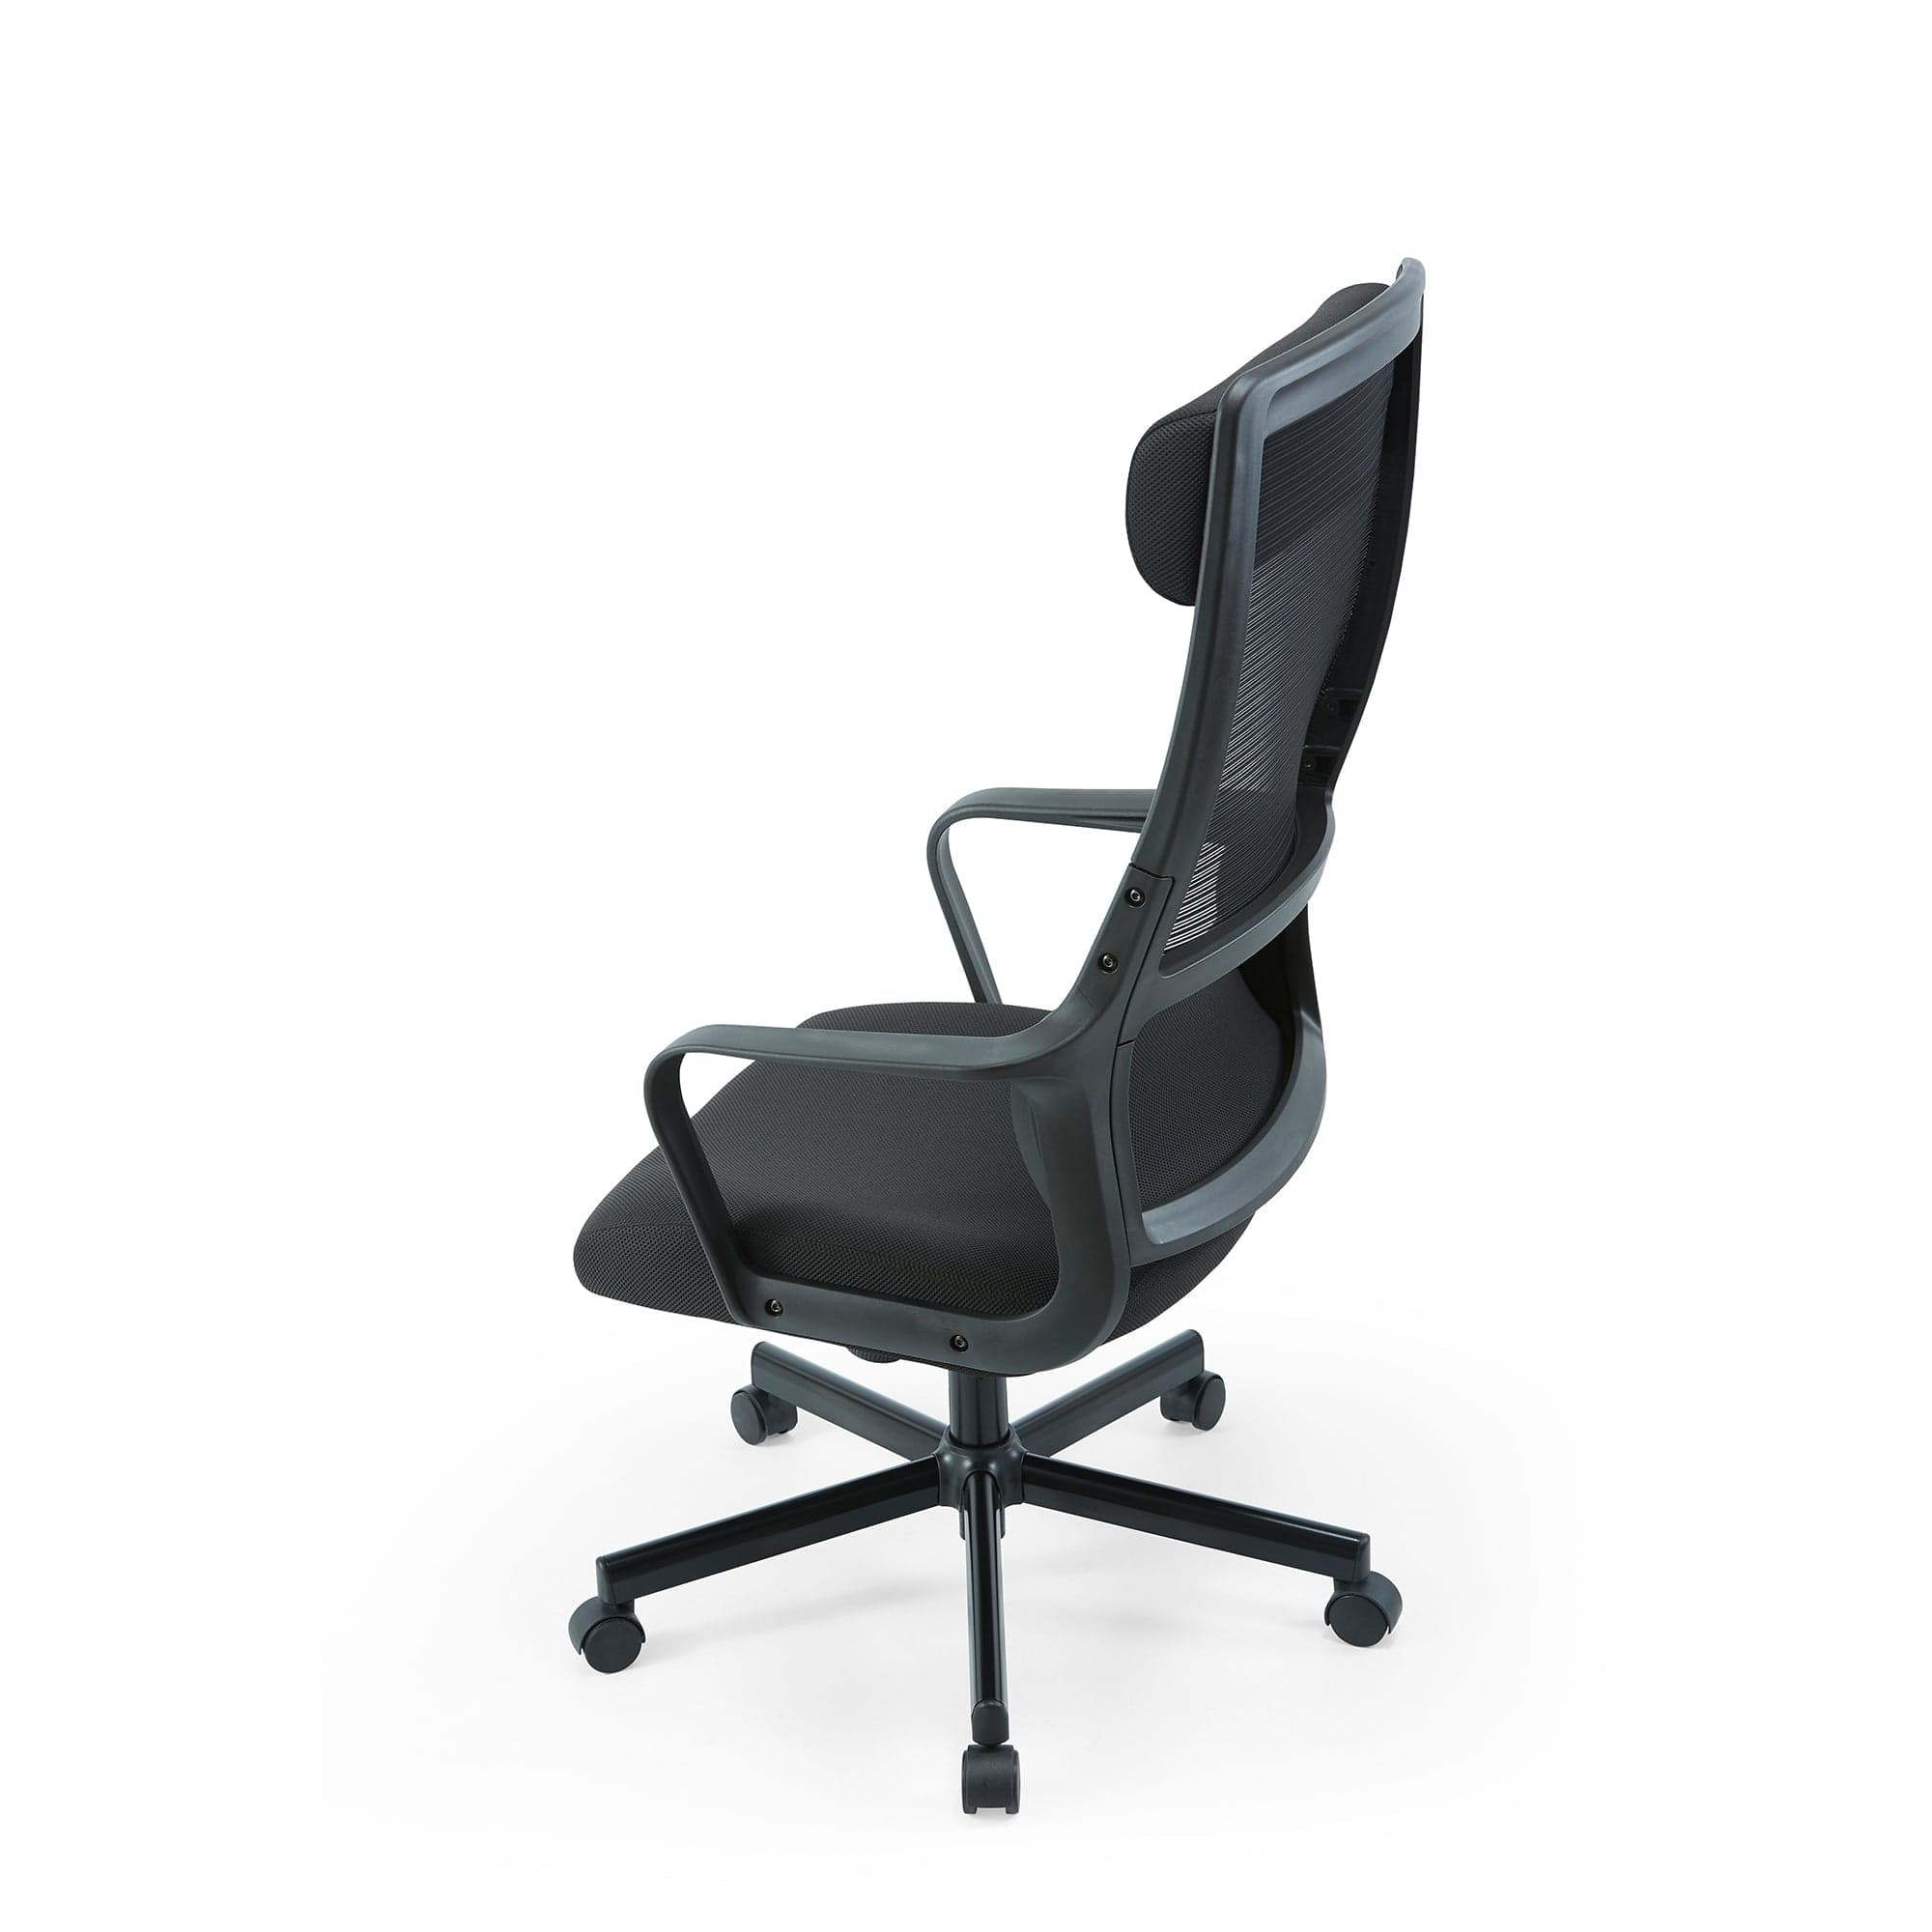 JAIR High Back Office Task Chair In Black/Grey